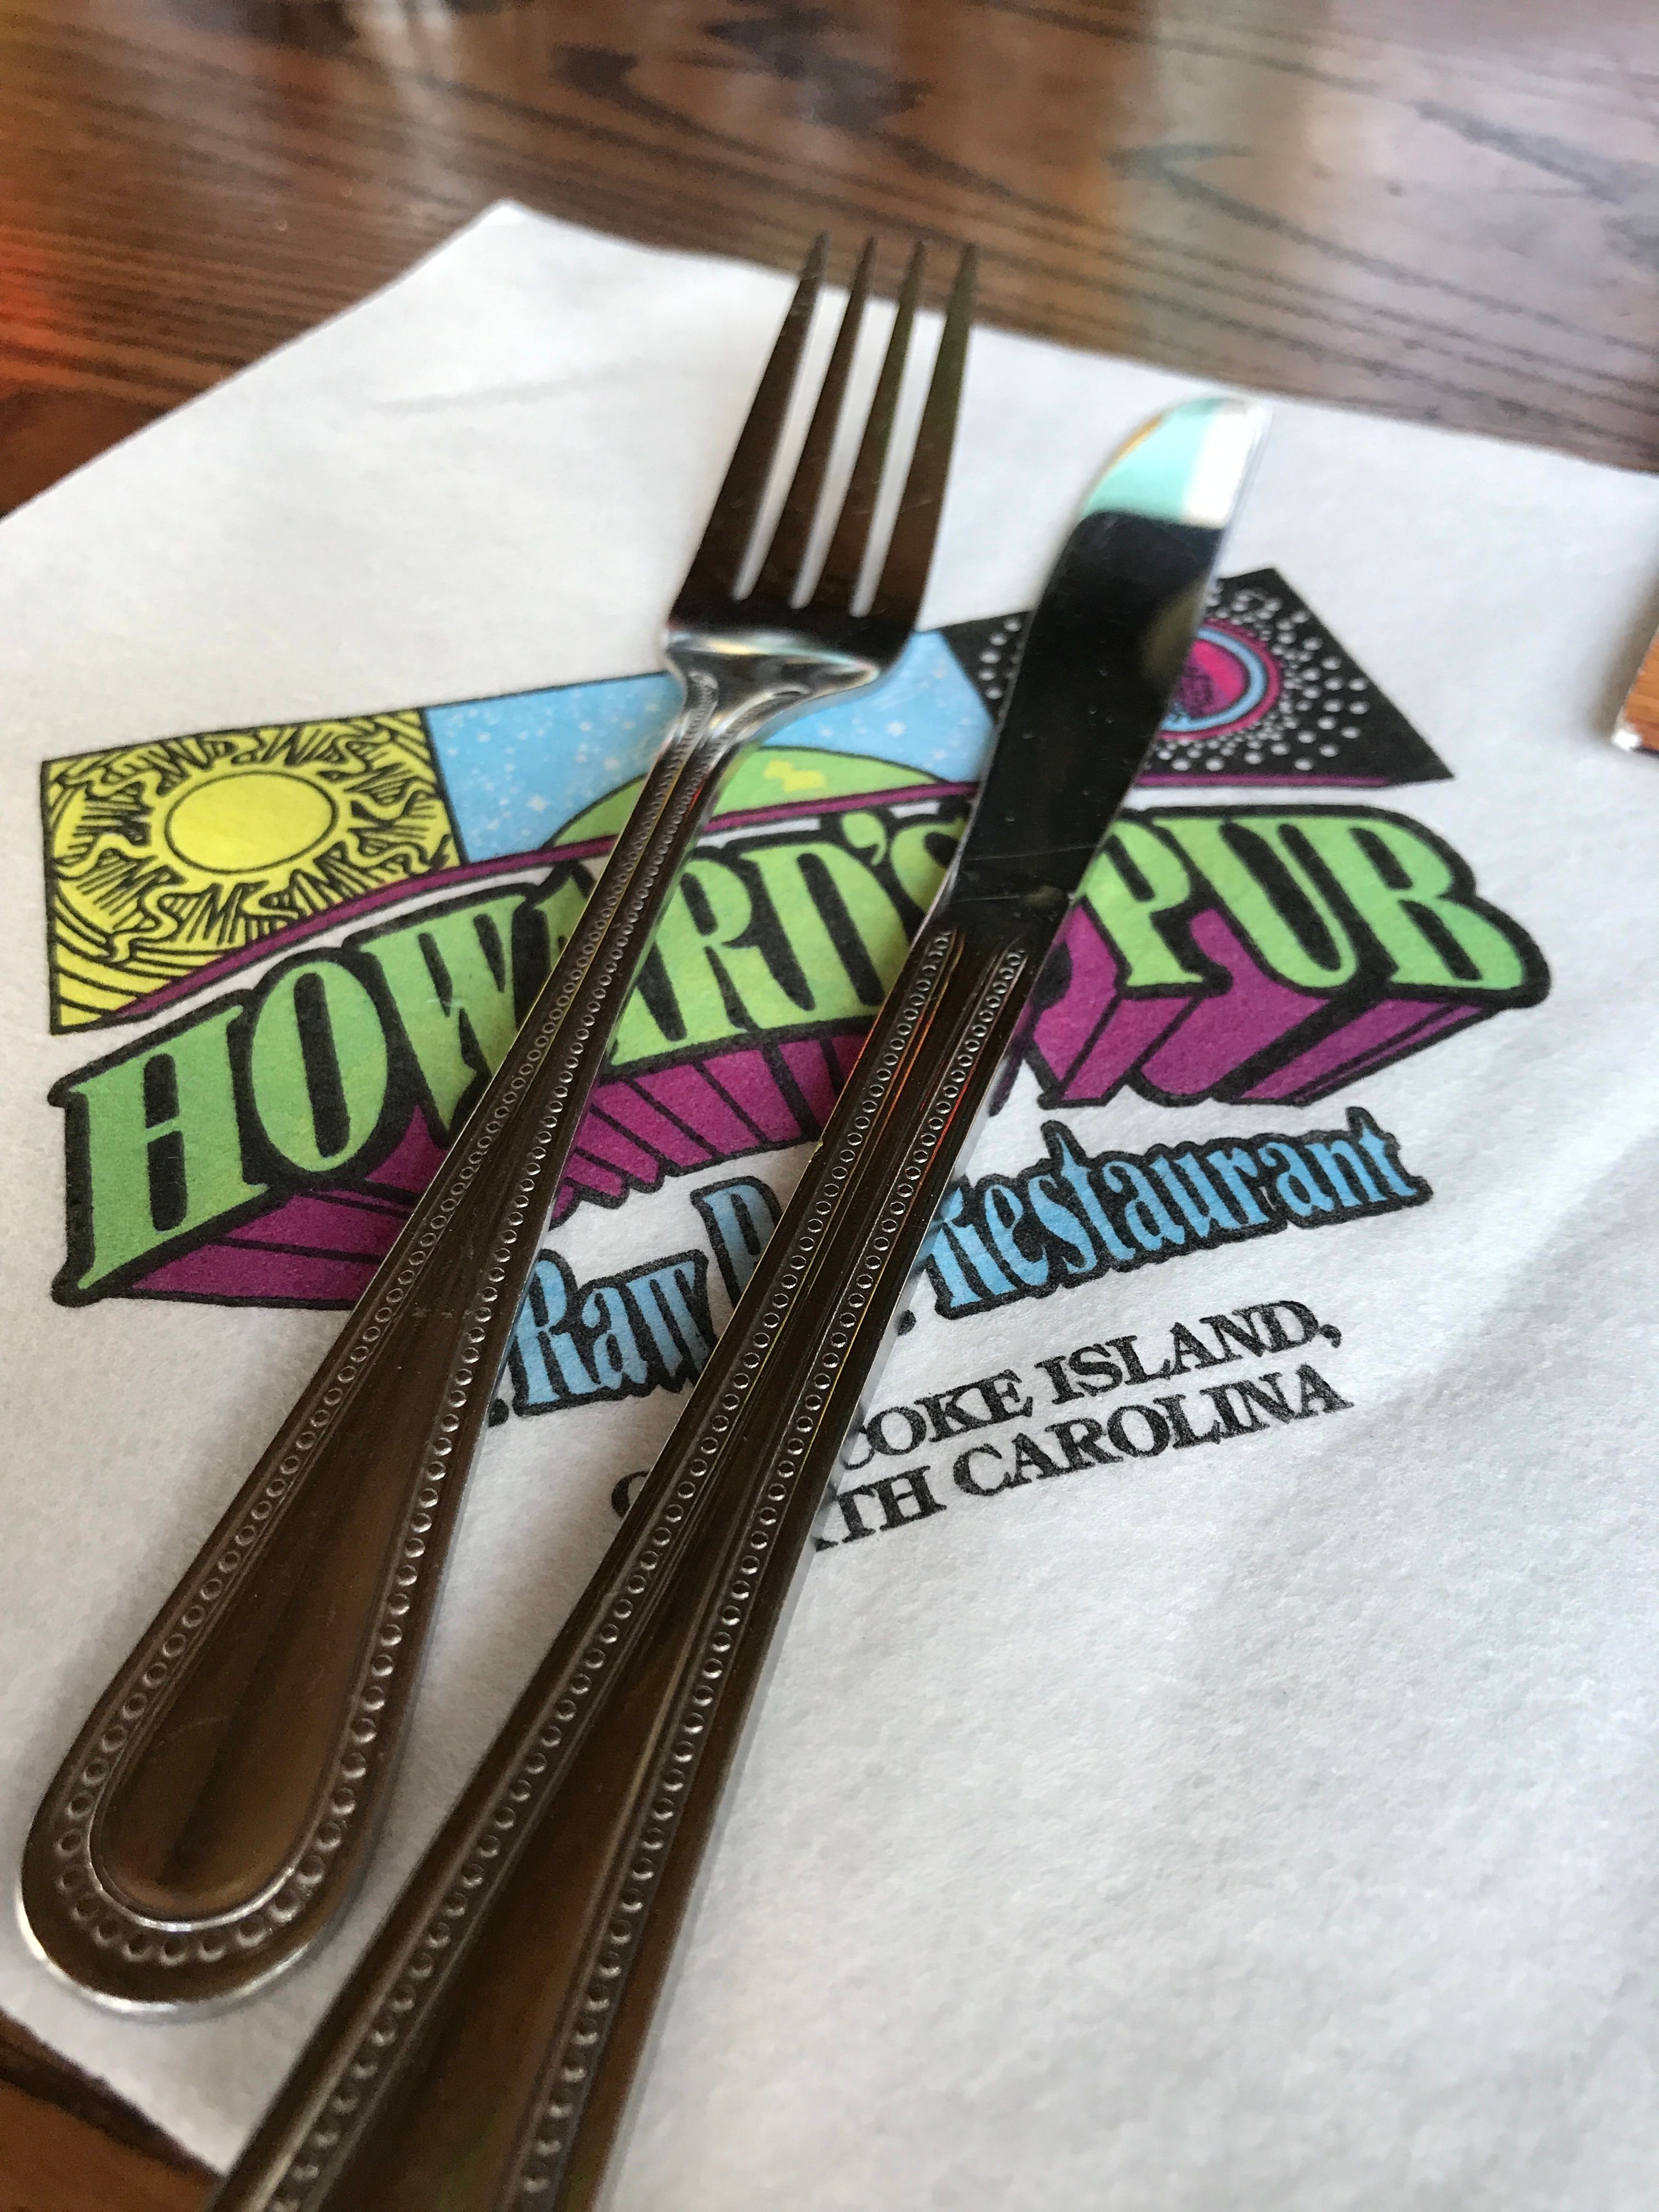 Howards Pub, Ocracoke Island